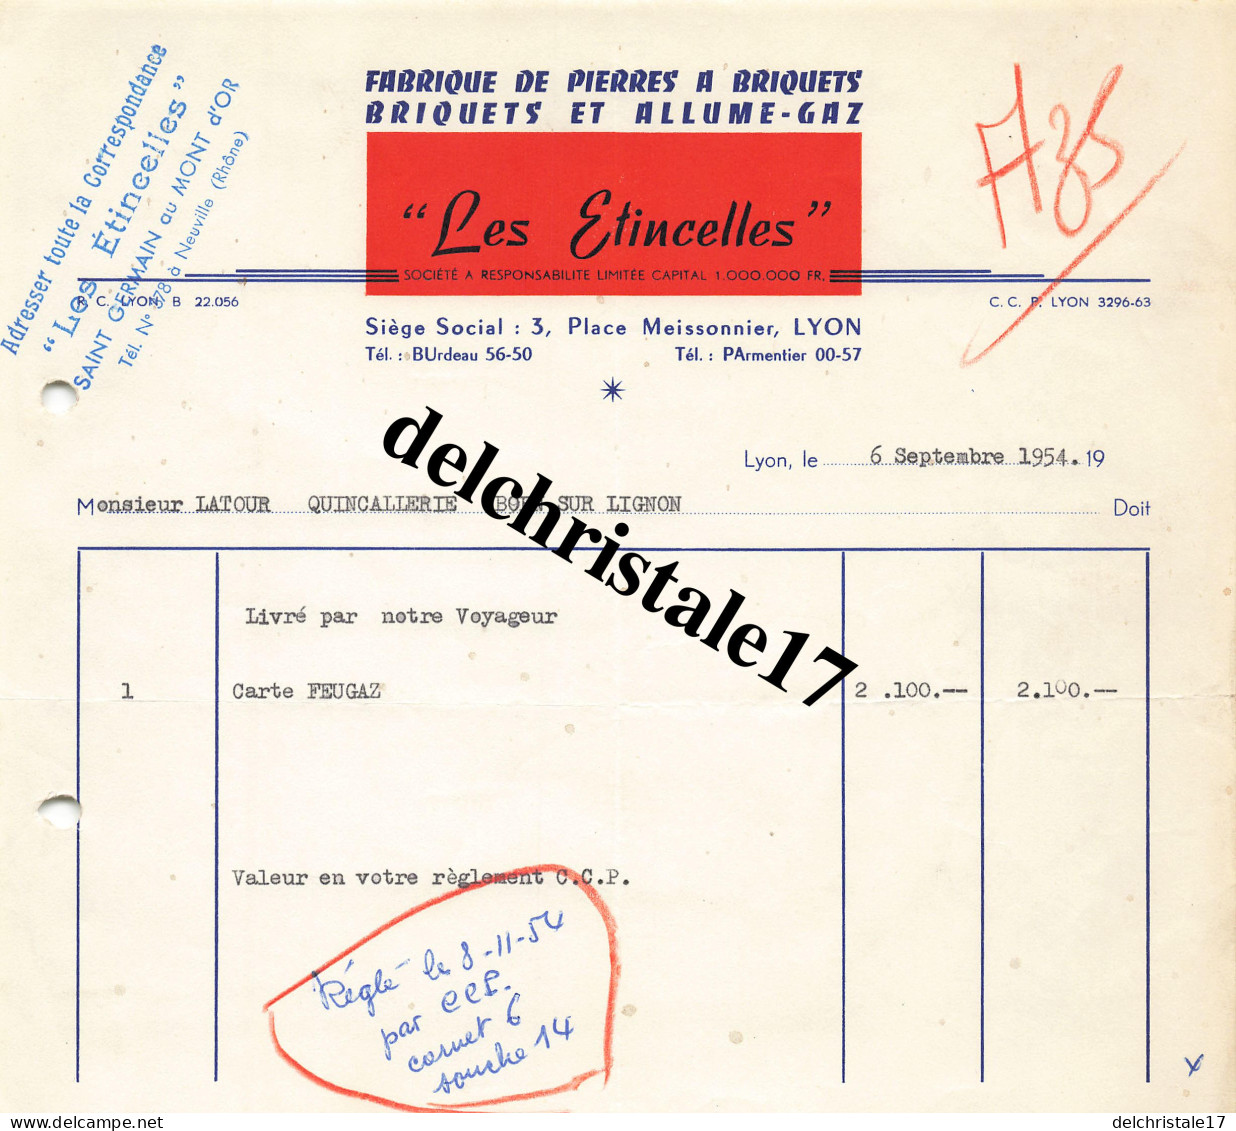 69 0188 LYON RHÔNE 1954 Fabrication De Pierres à Briquets Allume-Gaz "LES ÉTINCELLES" Place Meissonnier à M. LATOUR - Dokumente